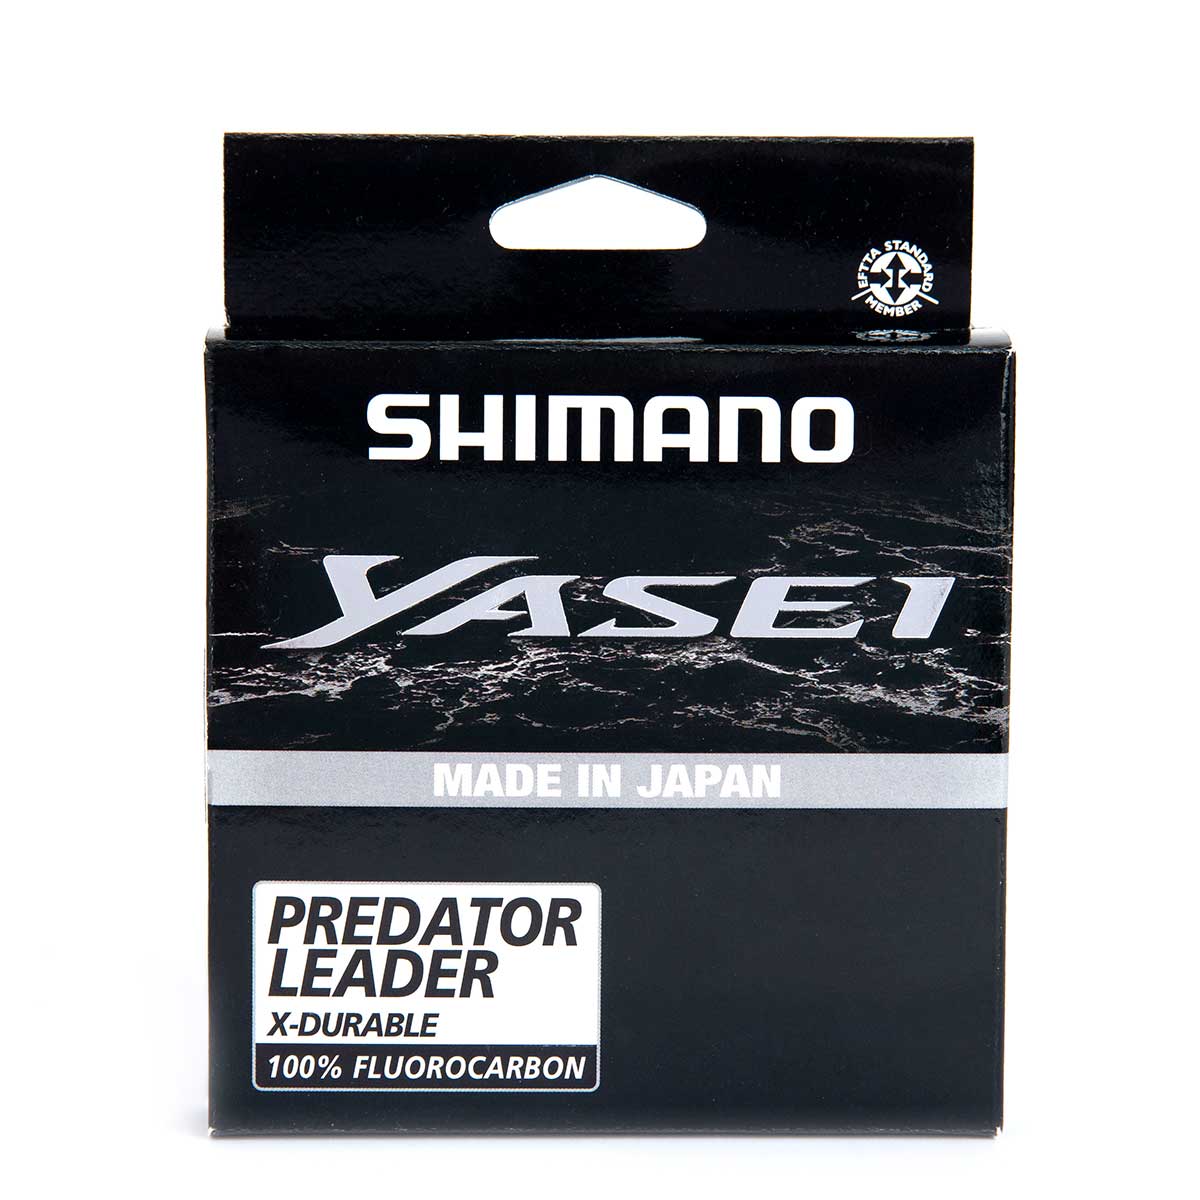 Shimano Yasei Predator 50 Metre Flourocarbon Misina, derinsu avlarınızda %100 görünmezlik etkisiyle japonya üretimli flourocarbon misina serisi